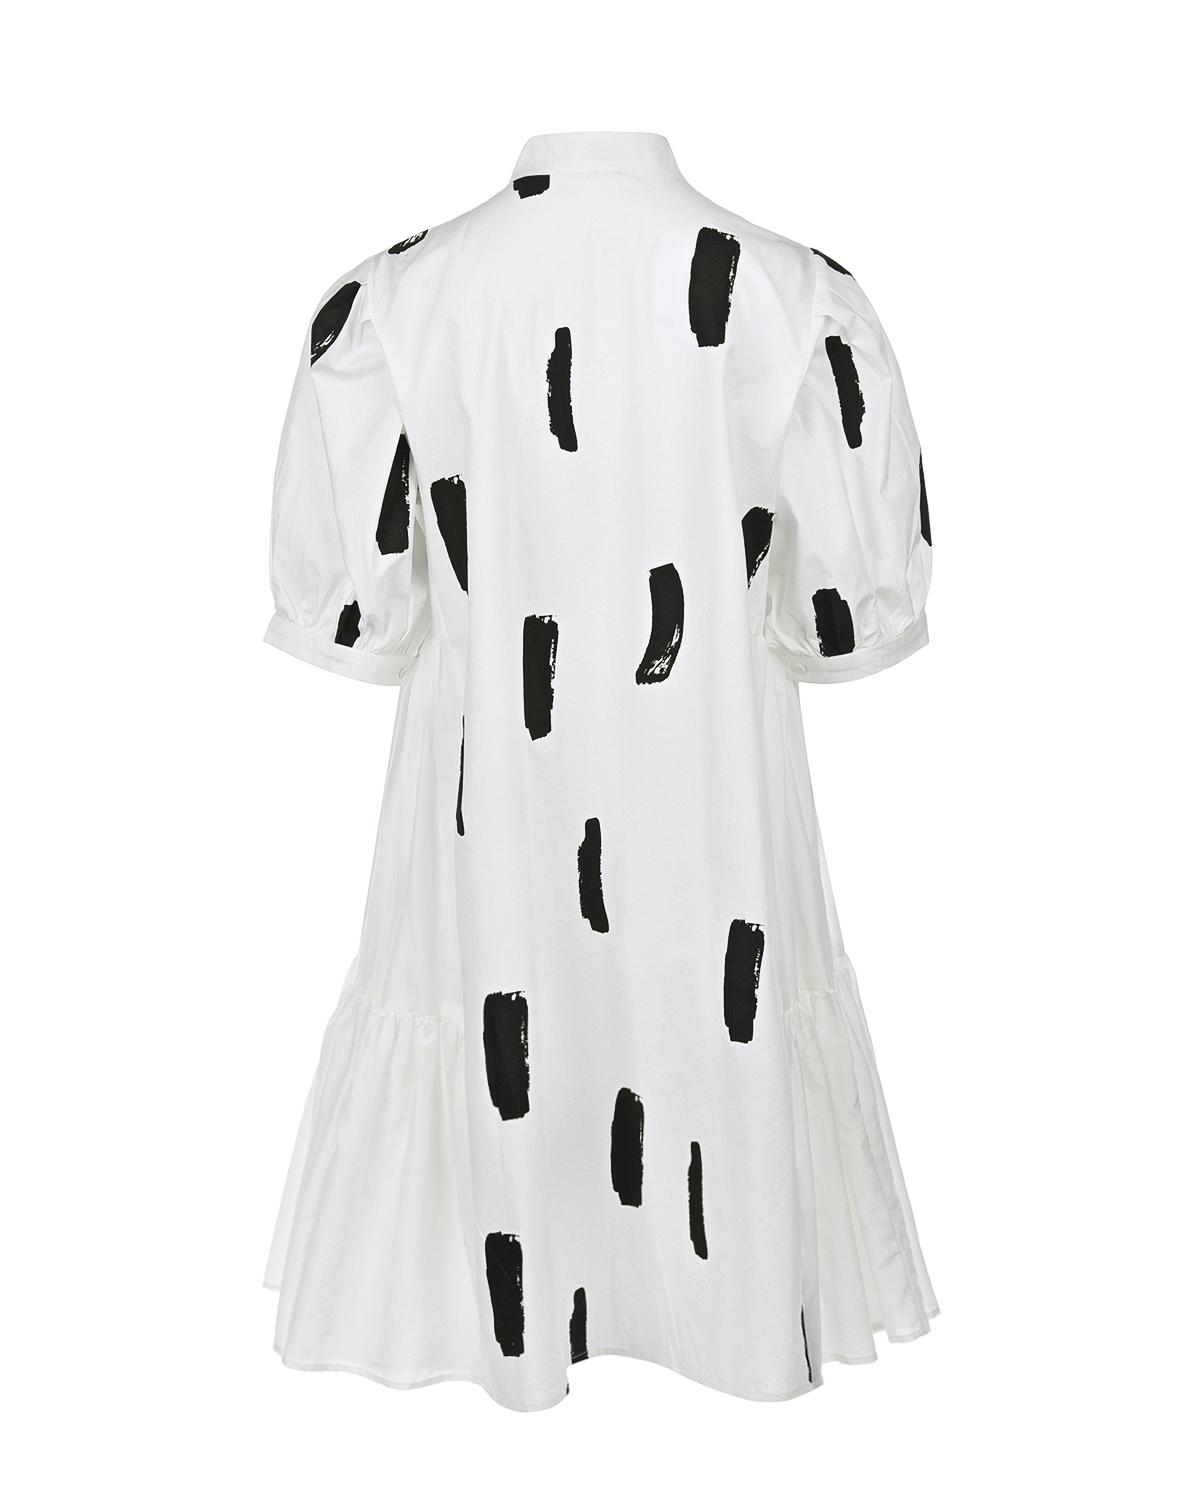 Платье-рубашка молочного цвета LOVE BIRDS, размер 40 - фото 5